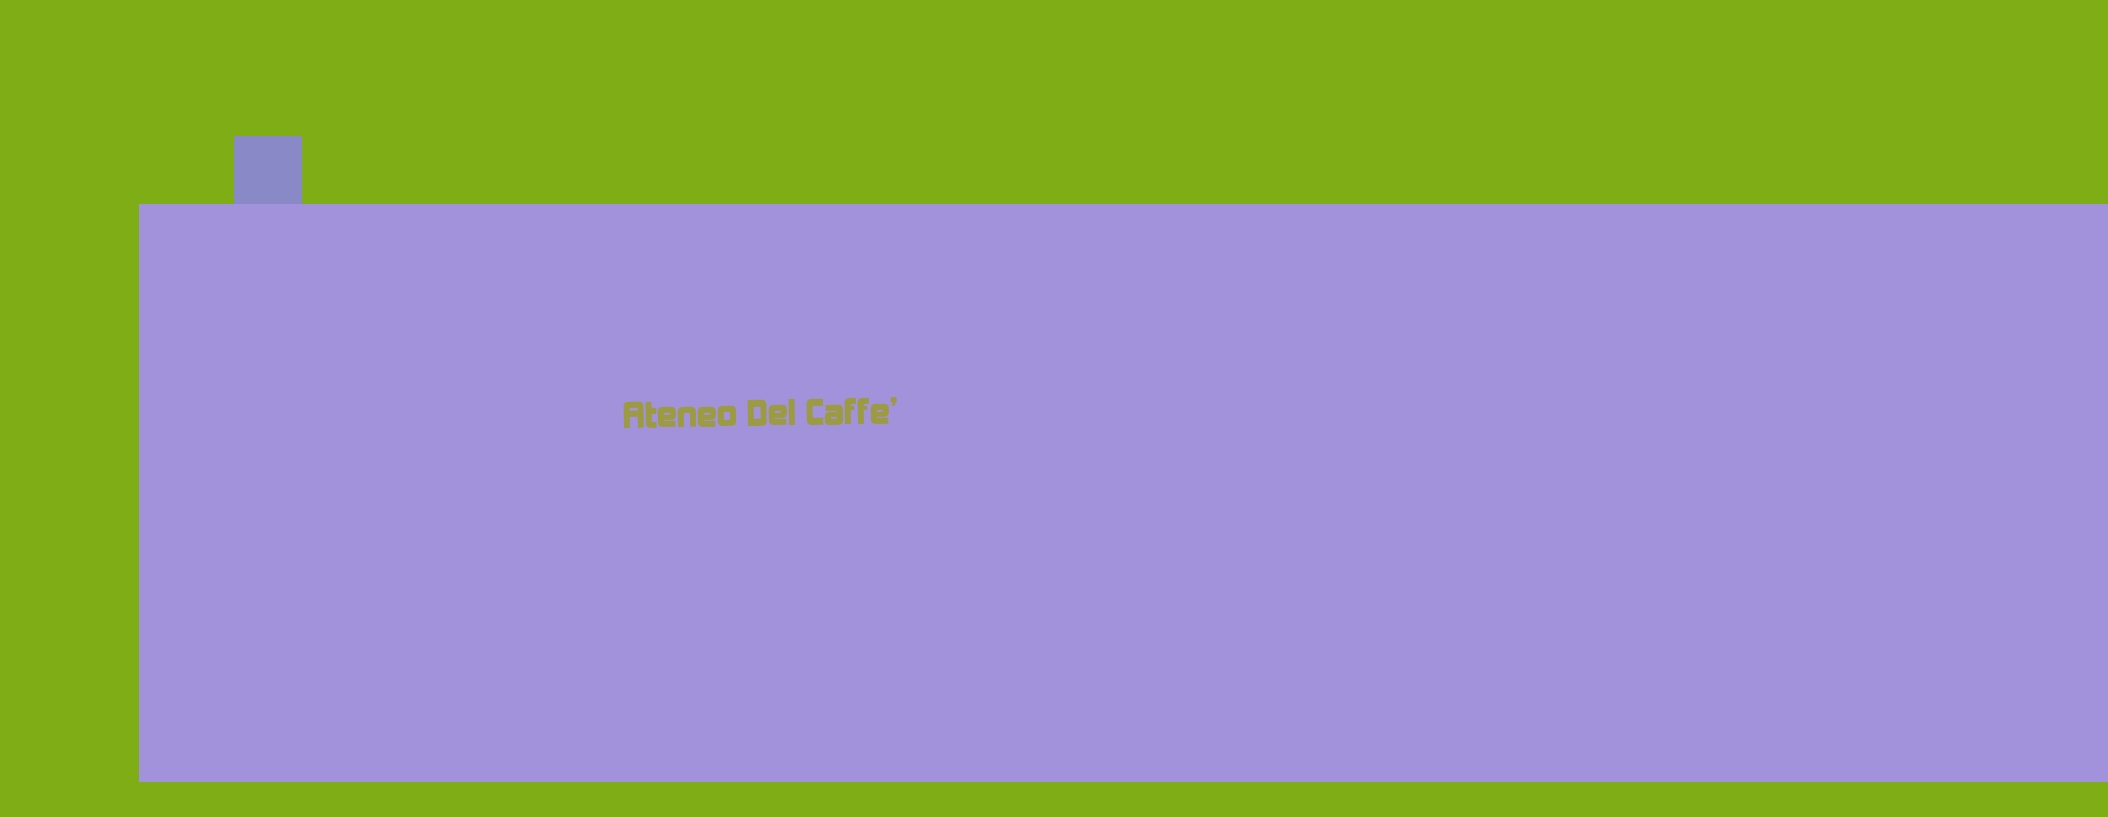 logo Ateneo Del Caffe‘